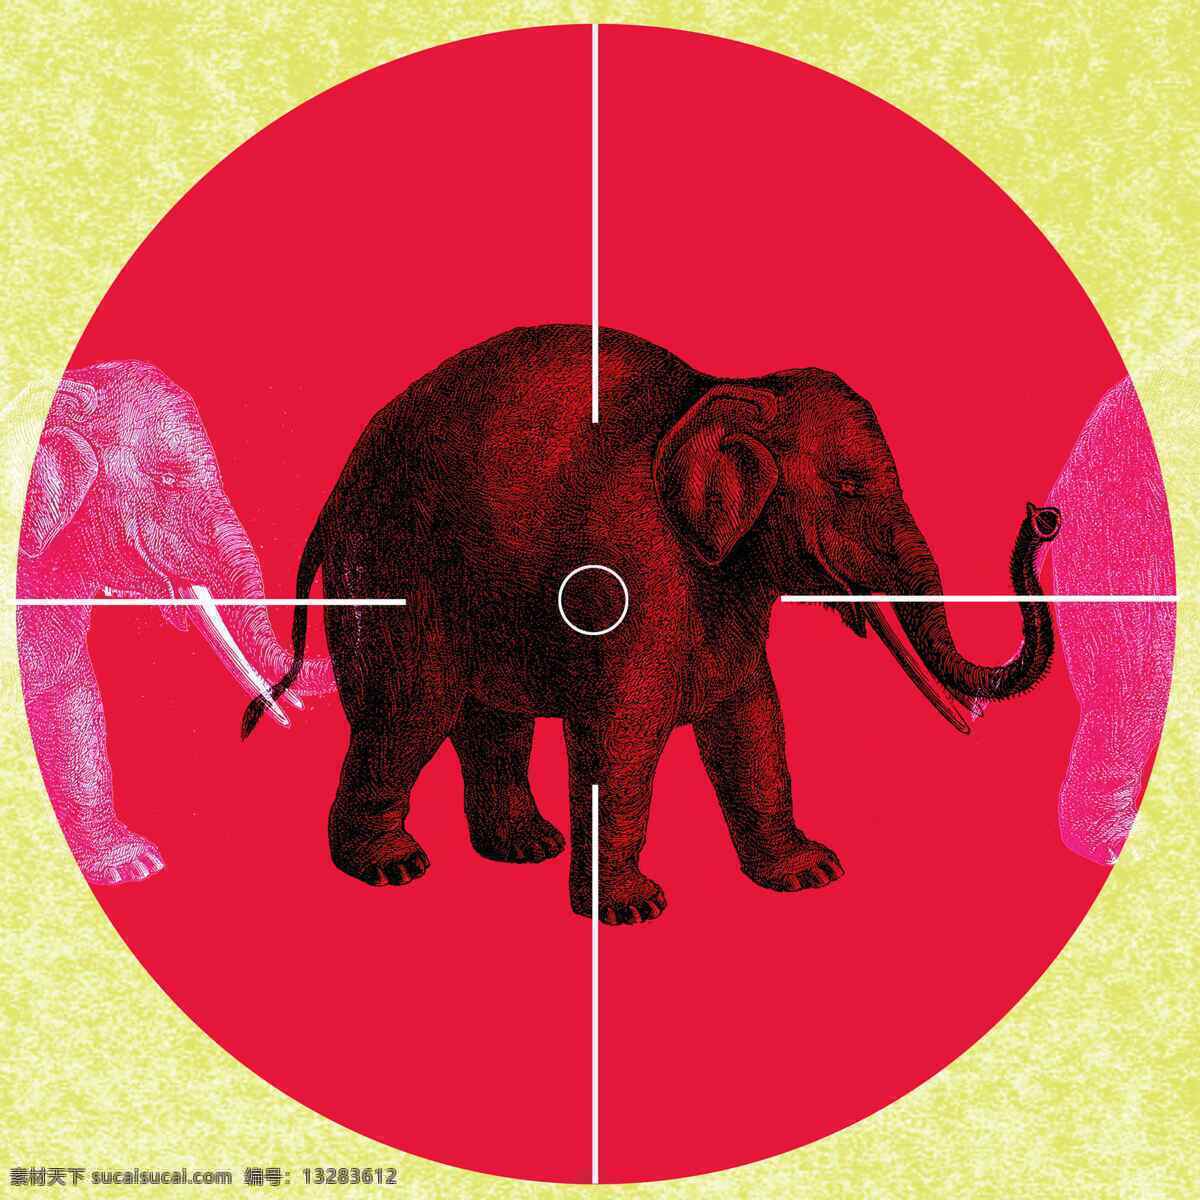 保护环境 背景 大象 底纹边框 地球 公益海报 地球环境 污染 环保 瞄准镜 其他素材 环保公益海报